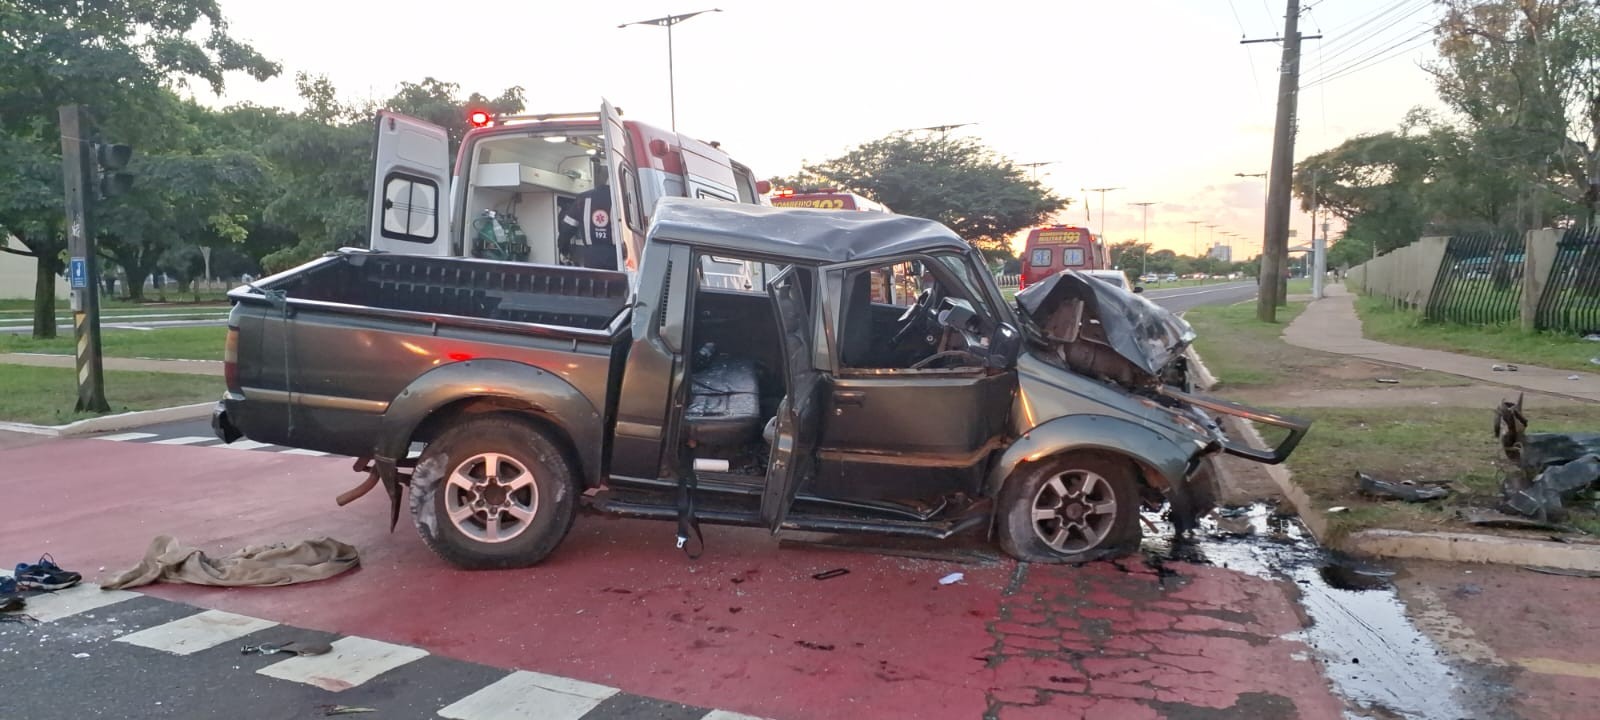 Caminhonete com 9 pessoas colide com semáforo e deixa feridos em Campo Grande